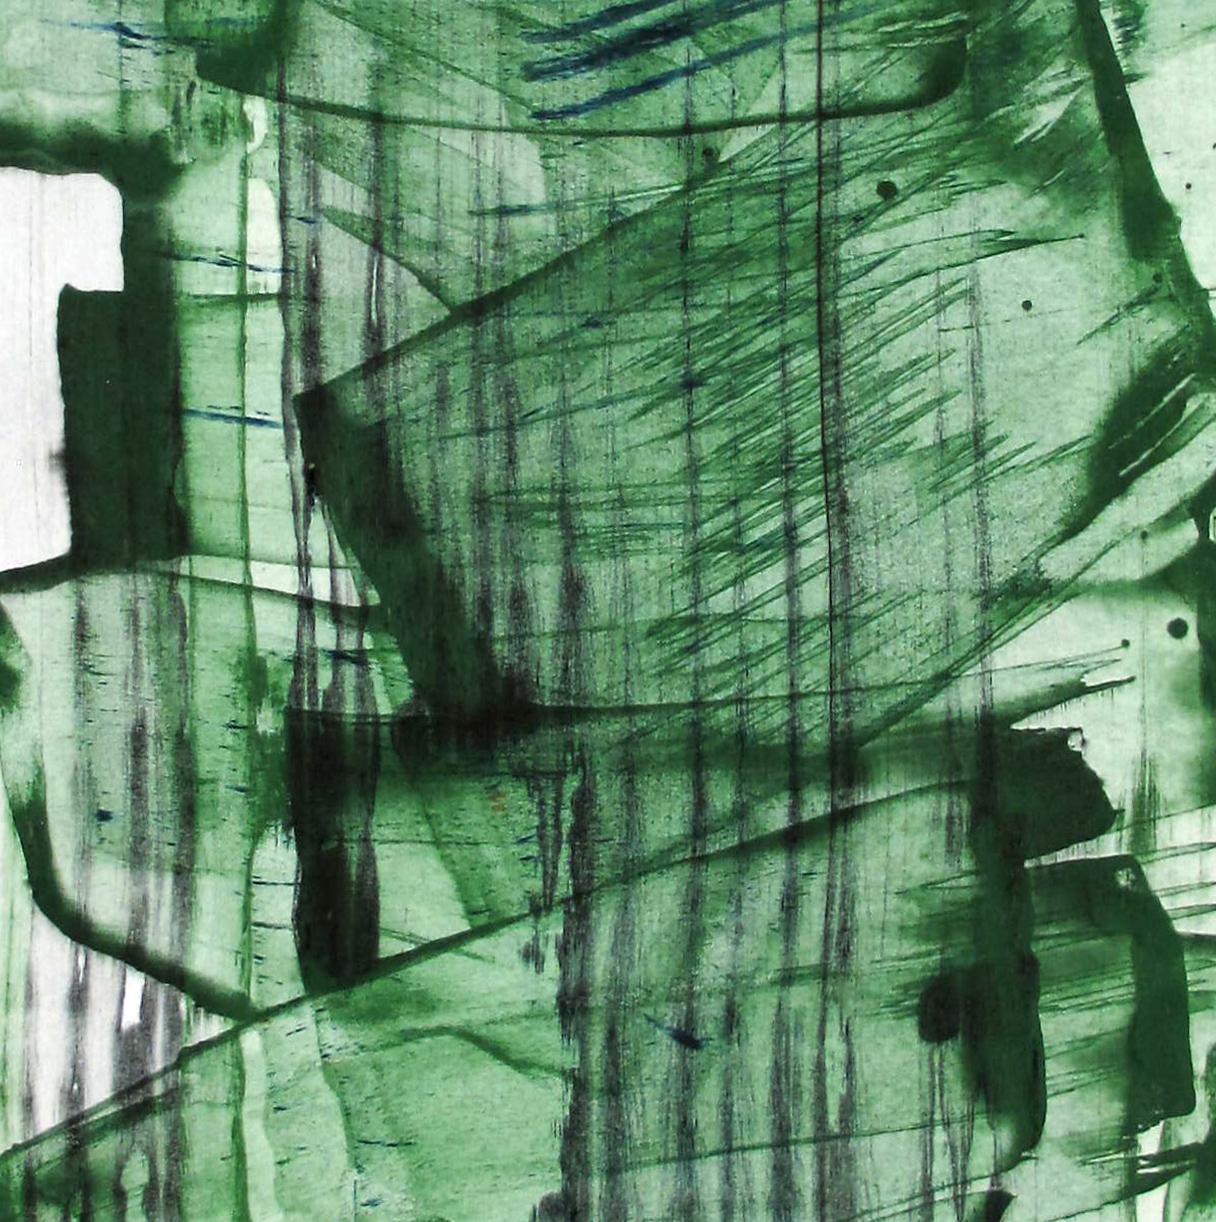 Mad green 9 (Abstrakte Malerei)
Acryl und Pigmente auf Papier - Ungerahmt.

Emma Godebska ist eine französische abstrakte Künstlerin, die in Nîmes, Frankreich, lebt.

Ihre Verwendung von Naturpigmenten, die die Natur selbst widerspiegeln, steht im